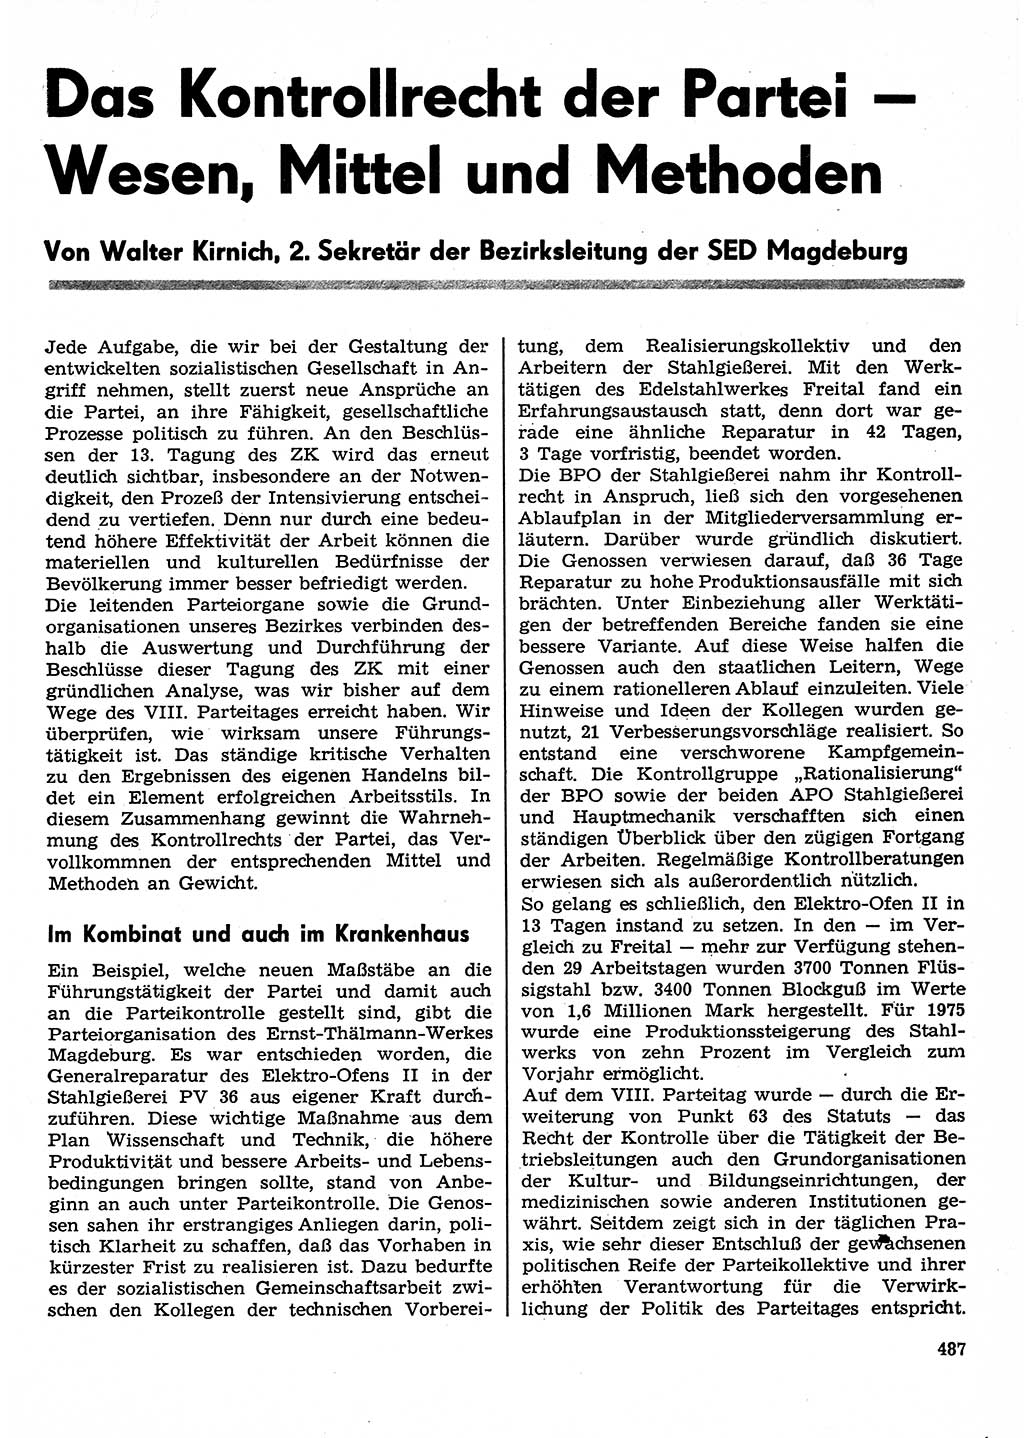 Neuer Weg (NW), Organ des Zentralkomitees (ZK) der SED (Sozialistische Einheitspartei Deutschlands) für Fragen des Parteilebens, 30. Jahrgang [Deutsche Demokratische Republik (DDR)] 1975, Seite 487 (NW ZK SED DDR 1975, S. 487)